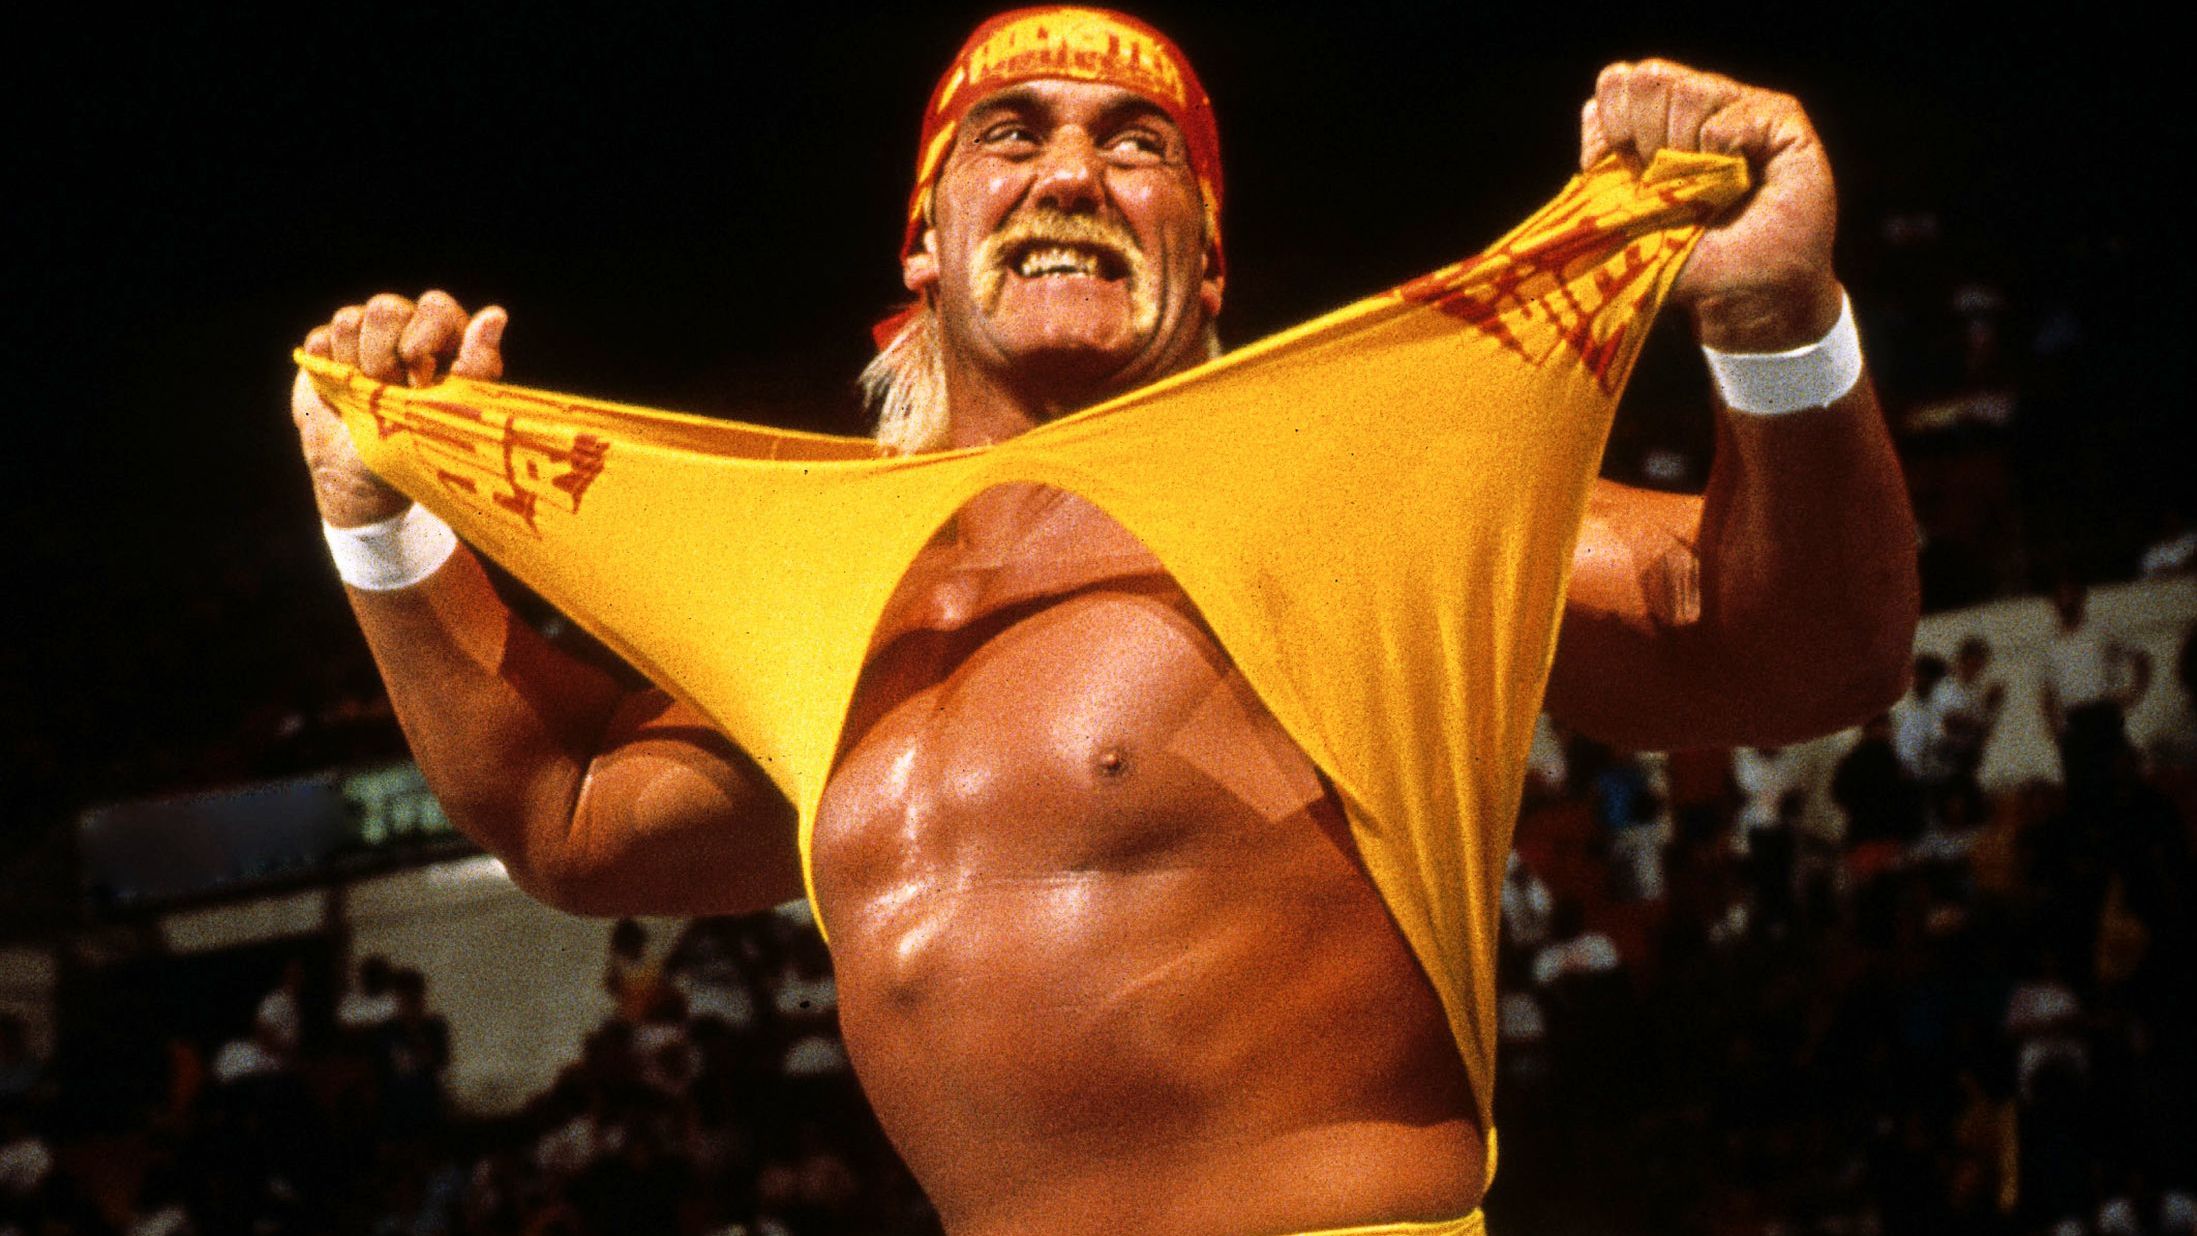 Wordt Hulk Hogan een slechterik in 'The Expendables 4'?